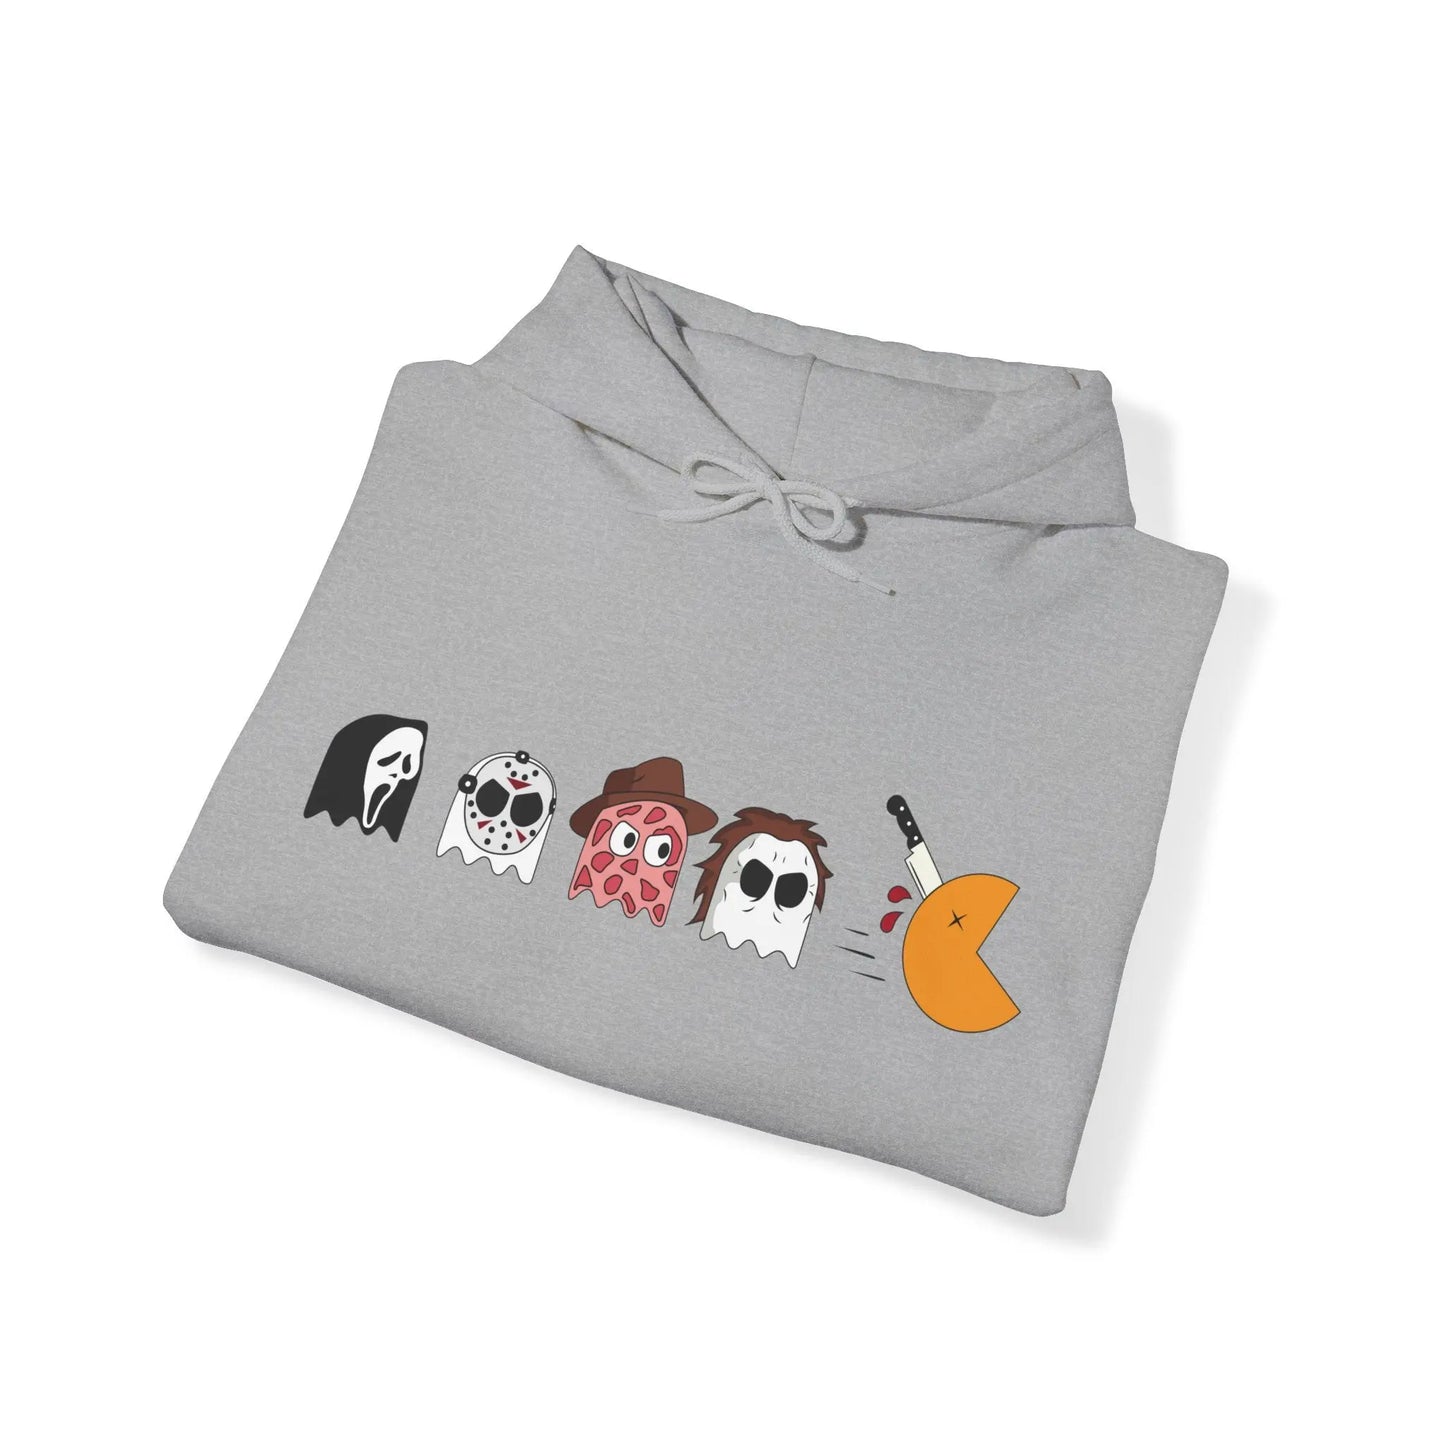 Pac-Man Halloween Horror - Spooky Hooded Sweatshirt Horror Movie Characters Scream, Jason, Freddy, and Michael Halloween Hoodie